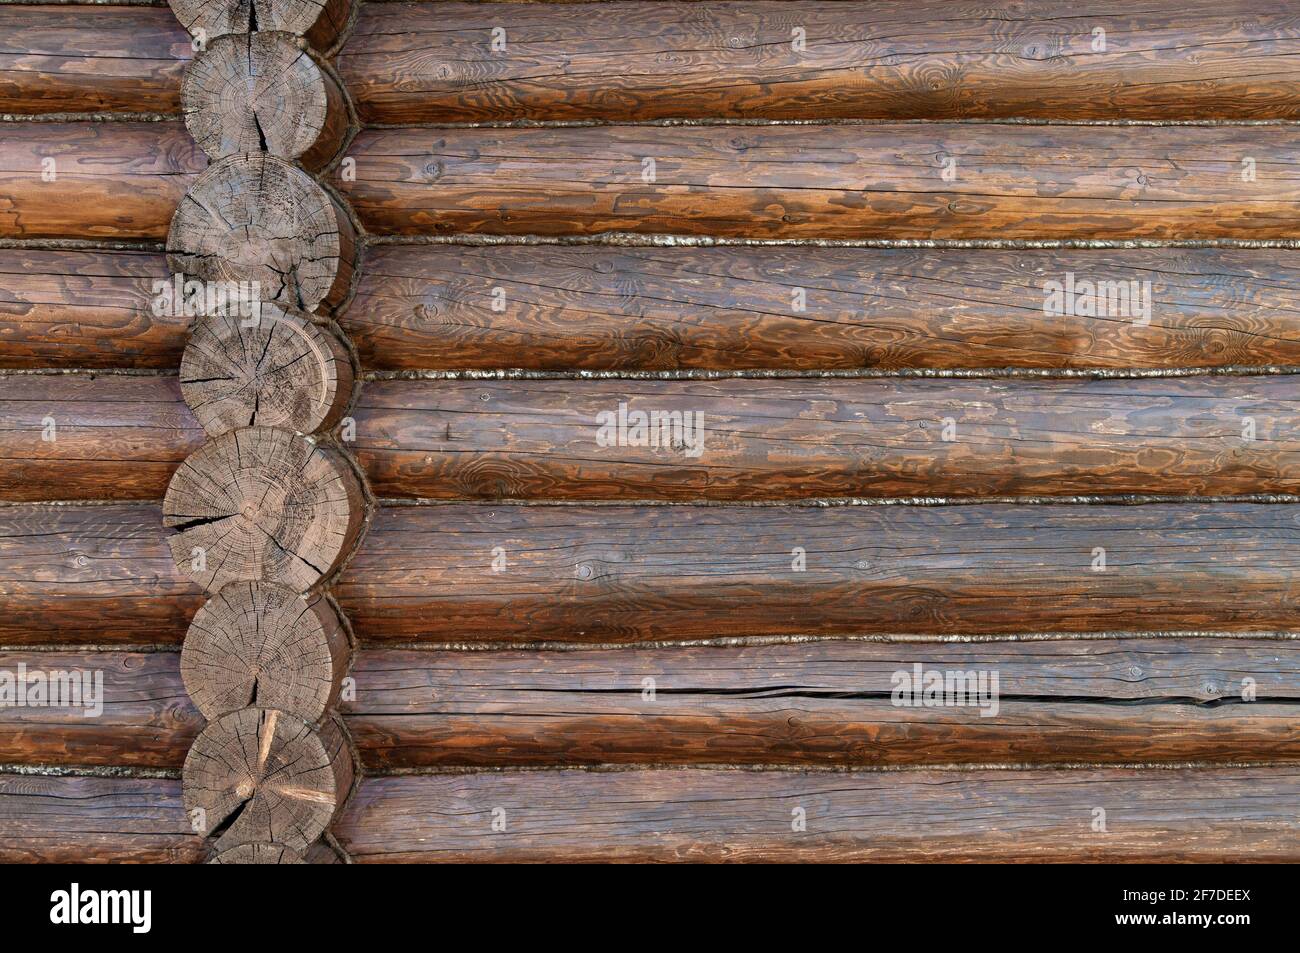 Arrière-plan de poutres en bois rugueuses, texture de mur brun en rondins pour la conception de bâtiments. Banque D'Images